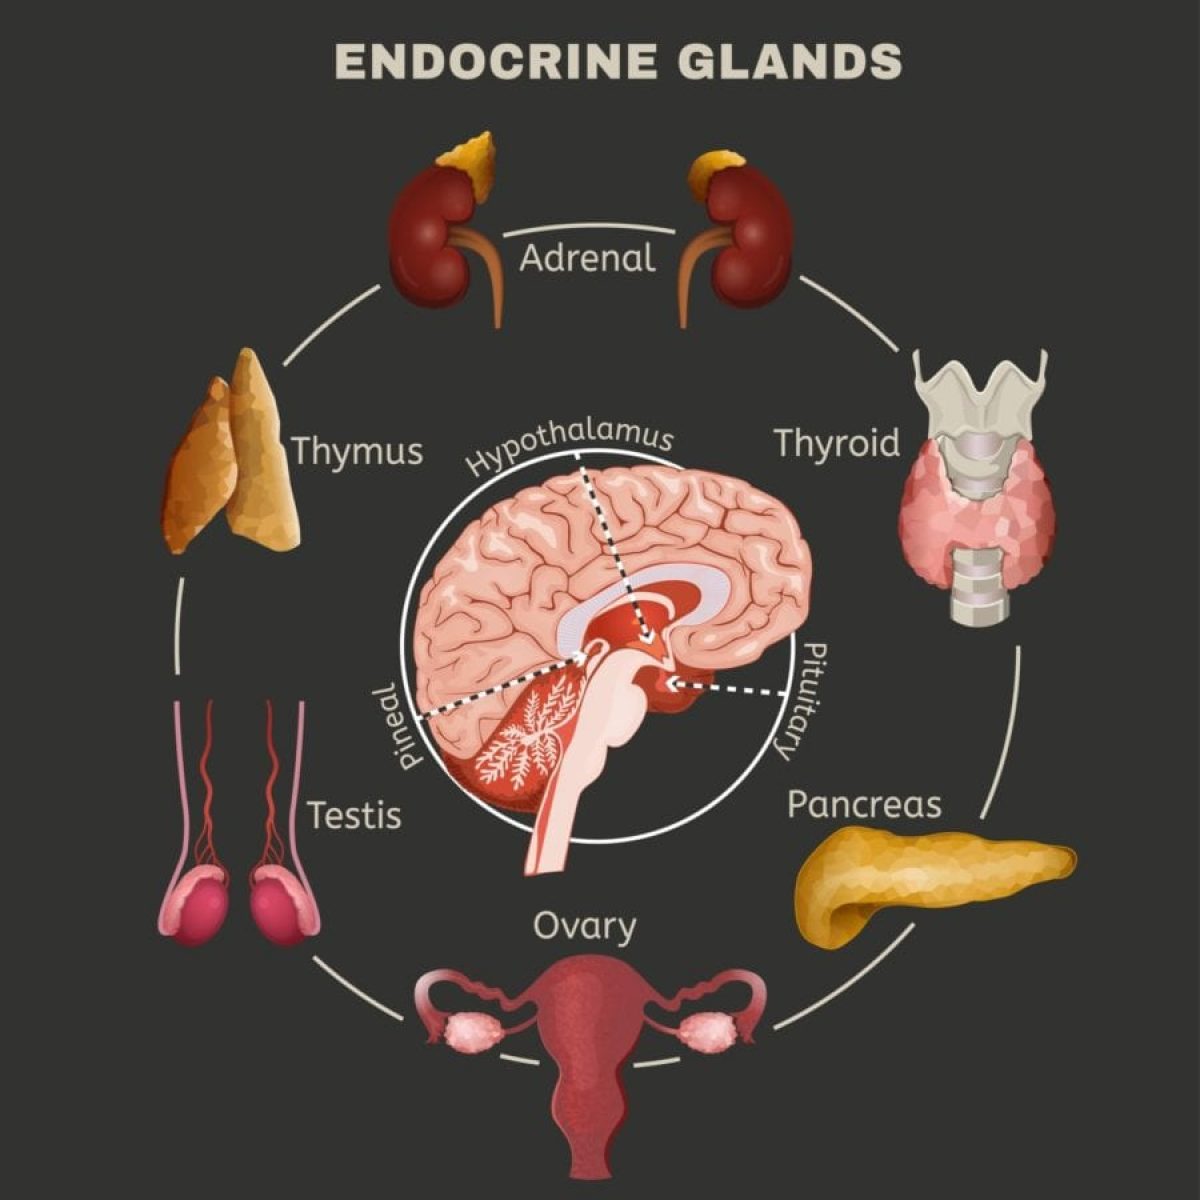 Endocrine glands